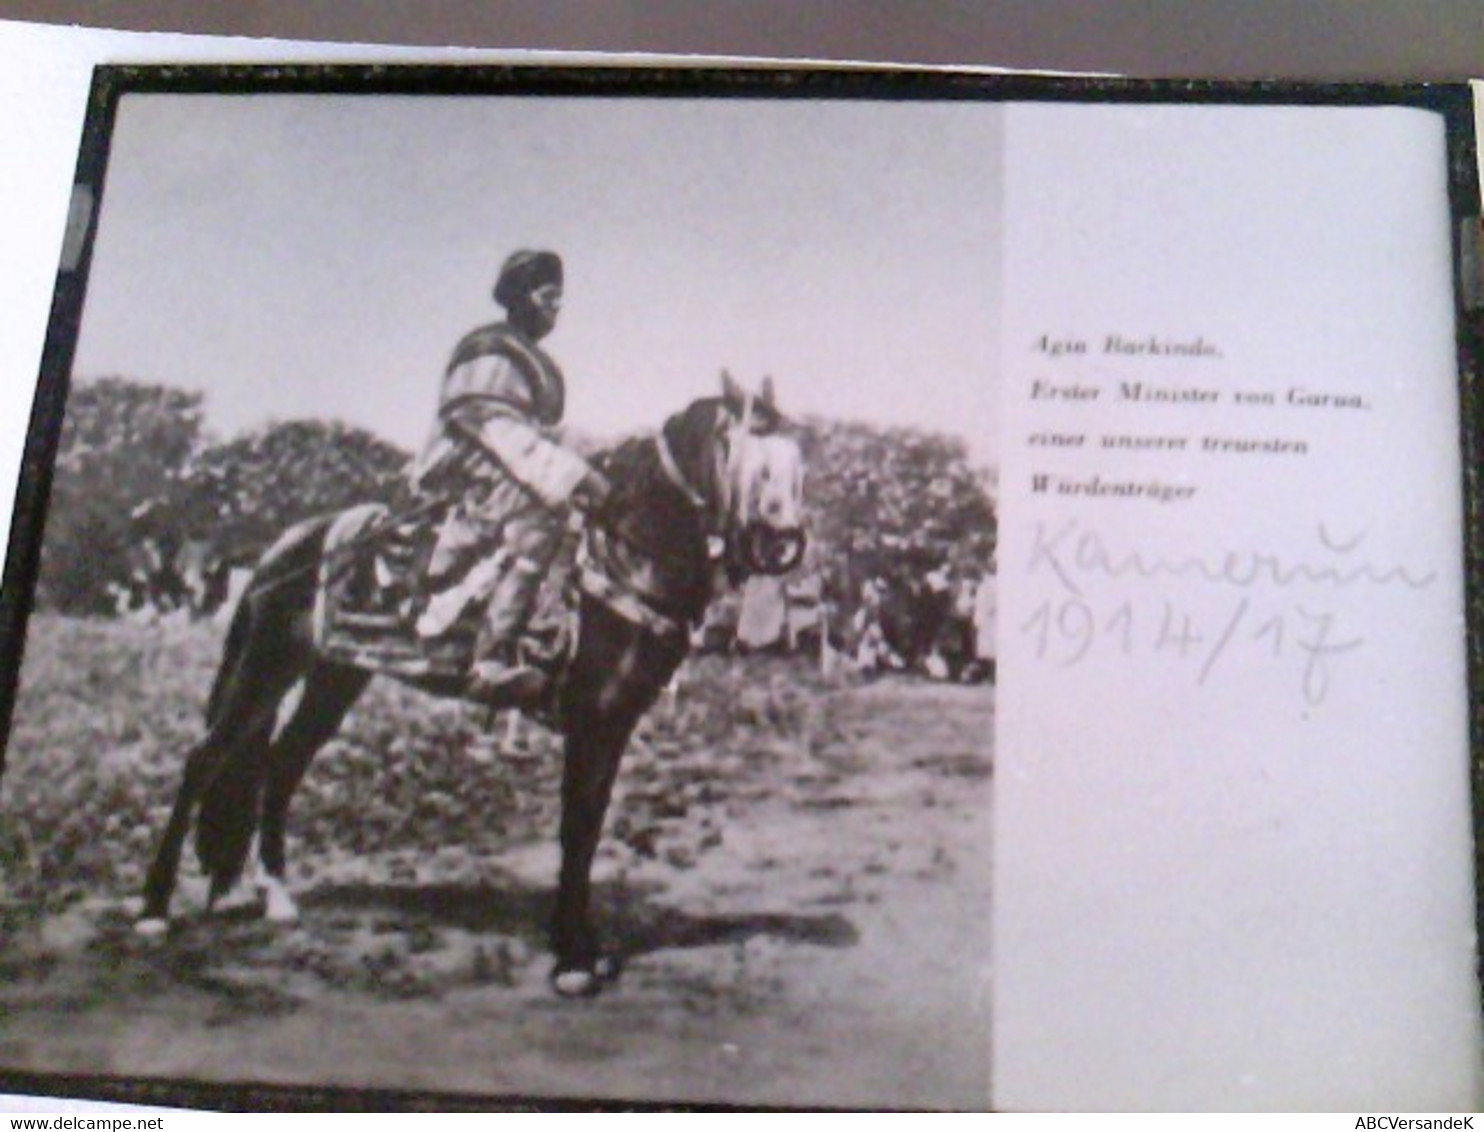 9 Fotos Konvolut: Kamerun 1914 - 1917. Wohl abfotografiert in alter Zeit von den originalen Fotos. Handschrift